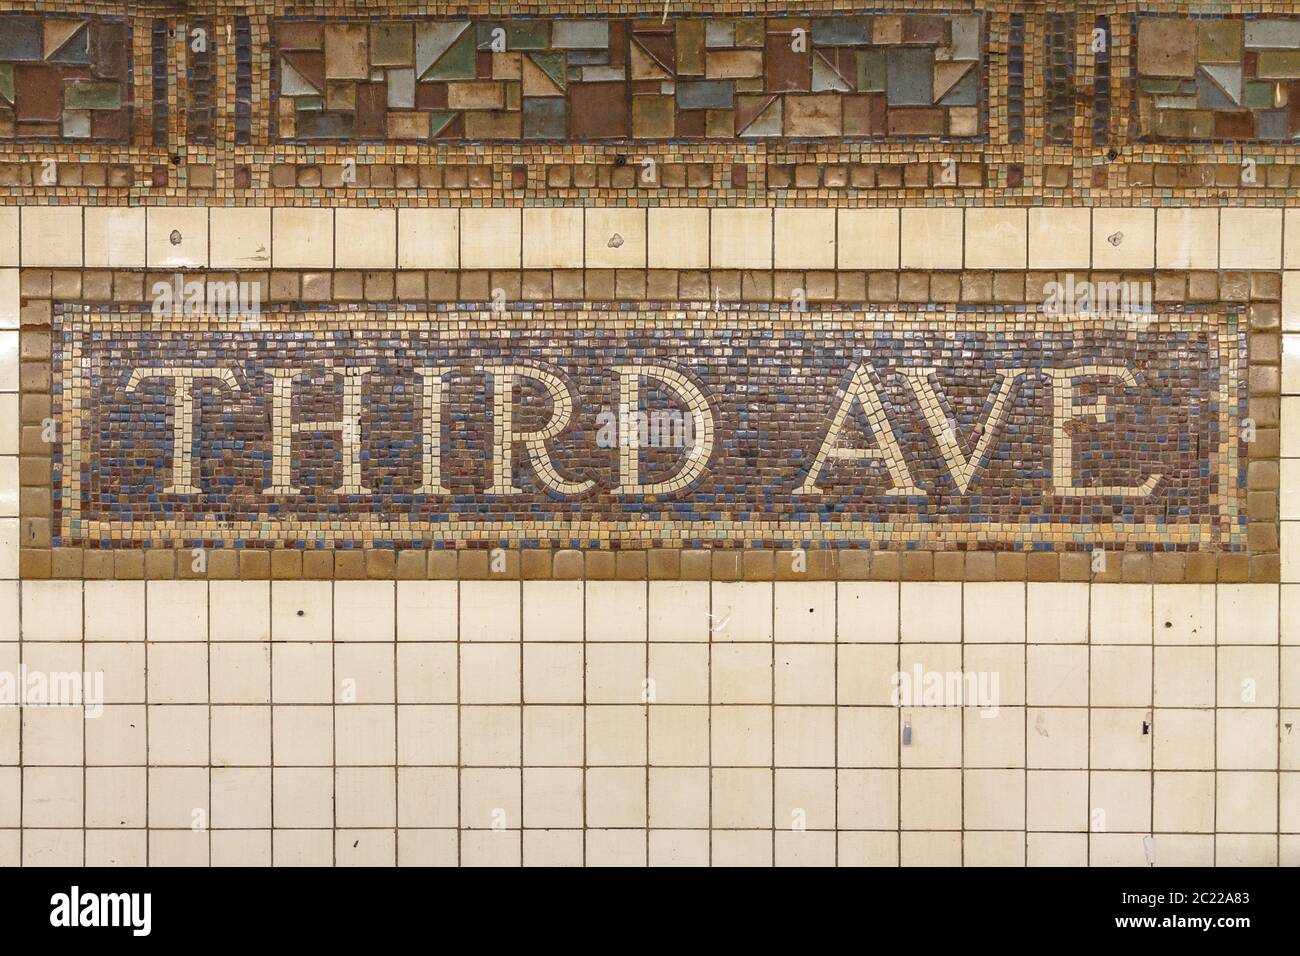 Il cartello a mosaico per la terza fermata Ave sulla metropolitana di New York Foto Stock